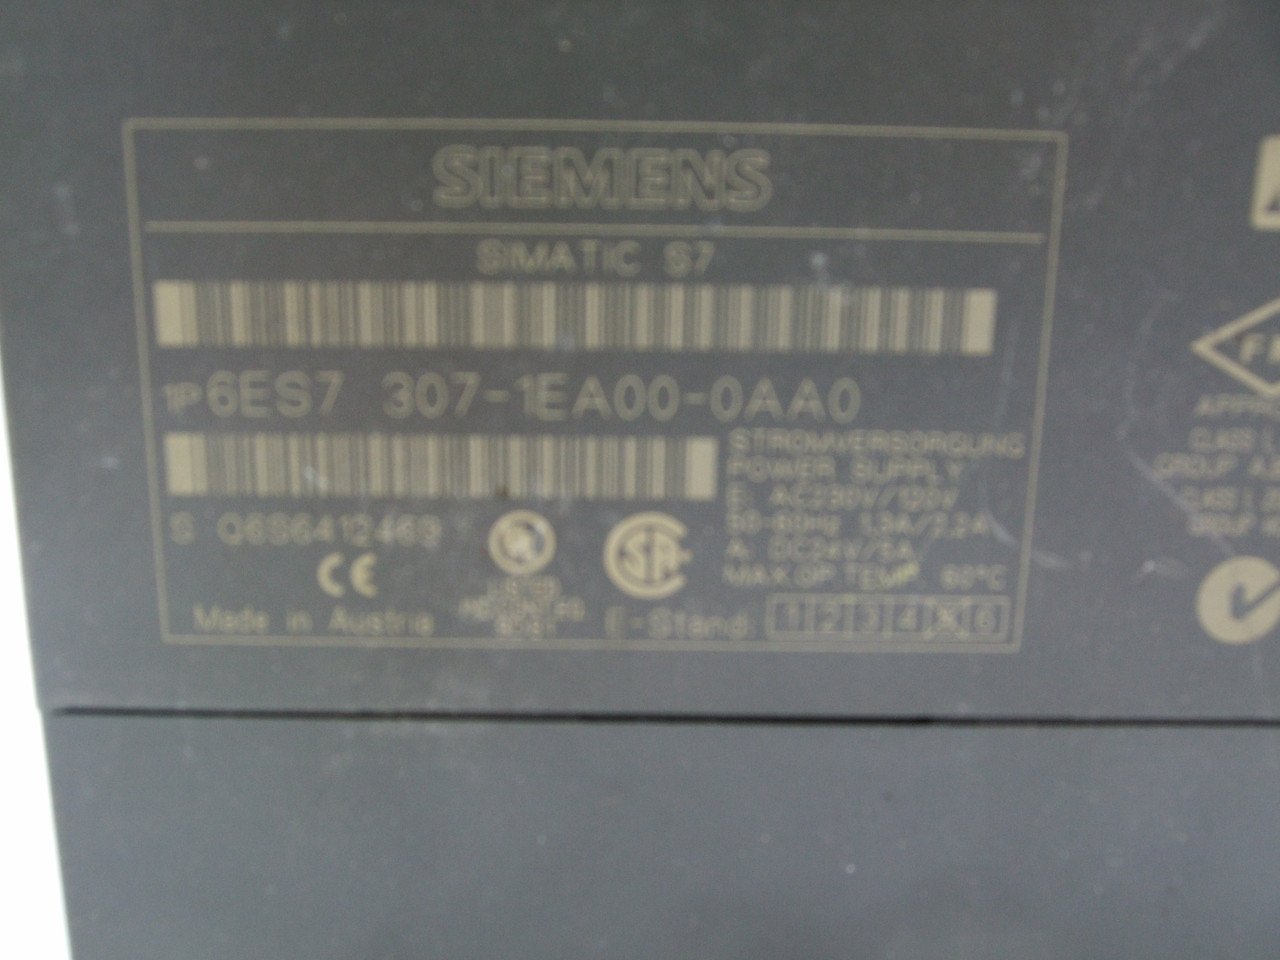 Siemens Simatic S7 6ES7 307-1EA00-0AA0 Digital Output Module